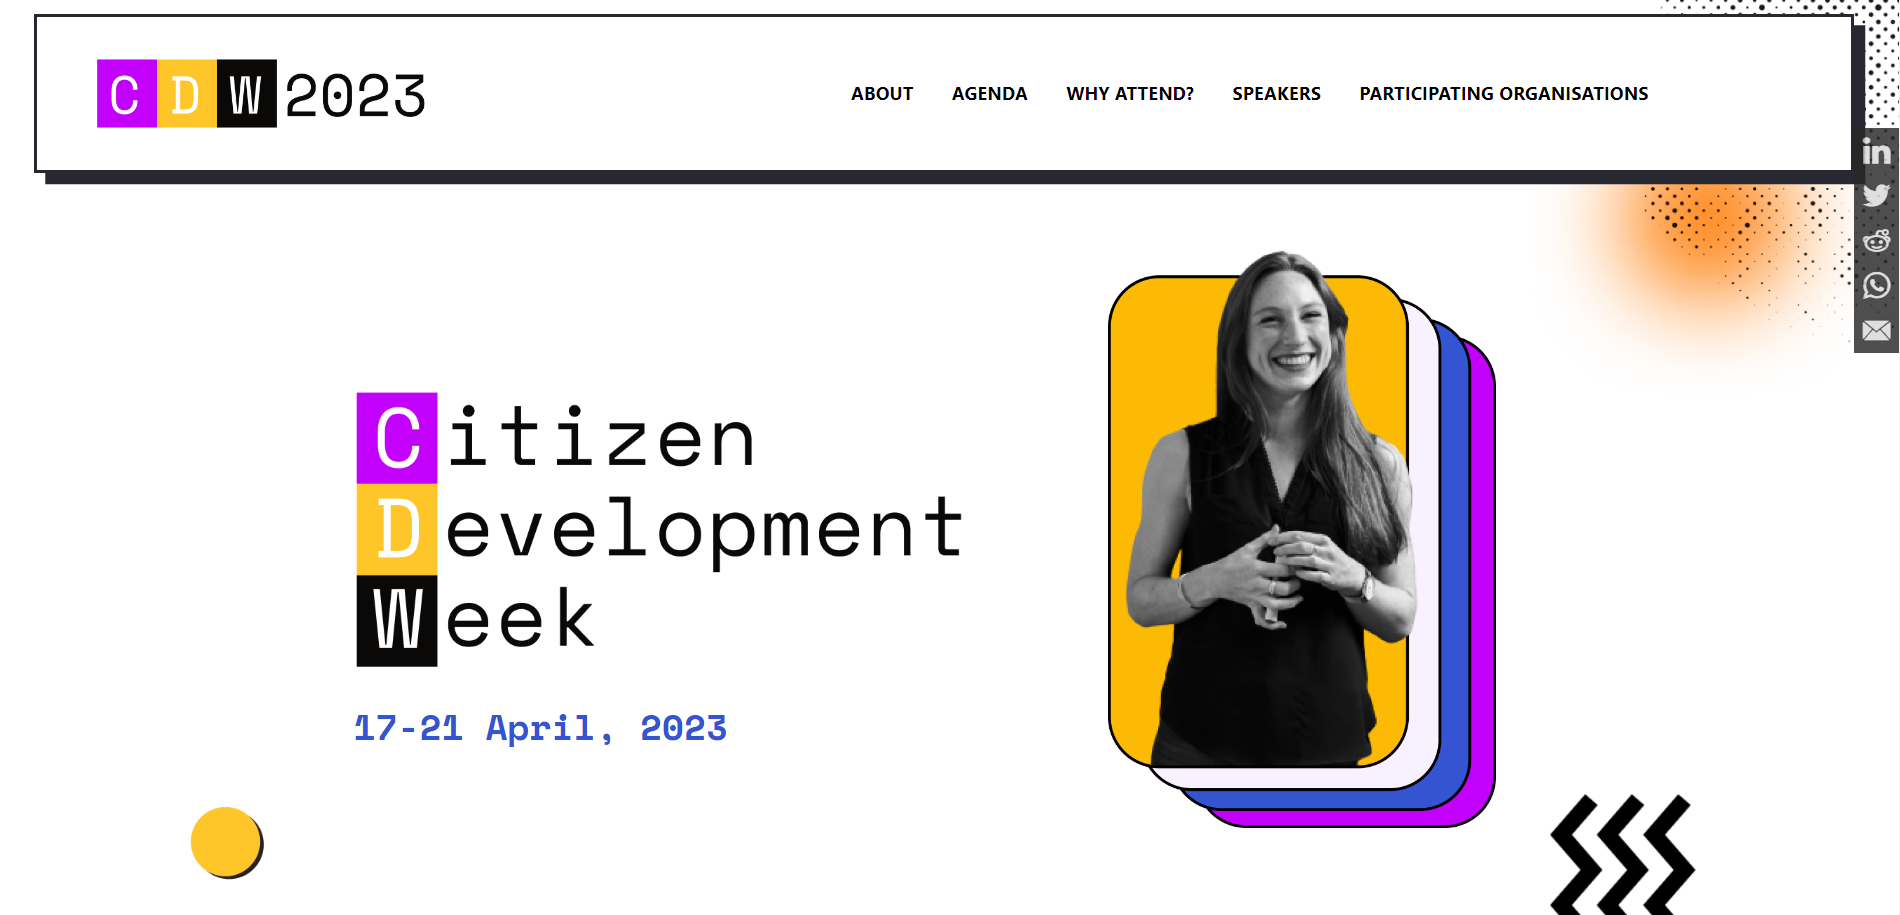 Citizen development week 2023 No-code event